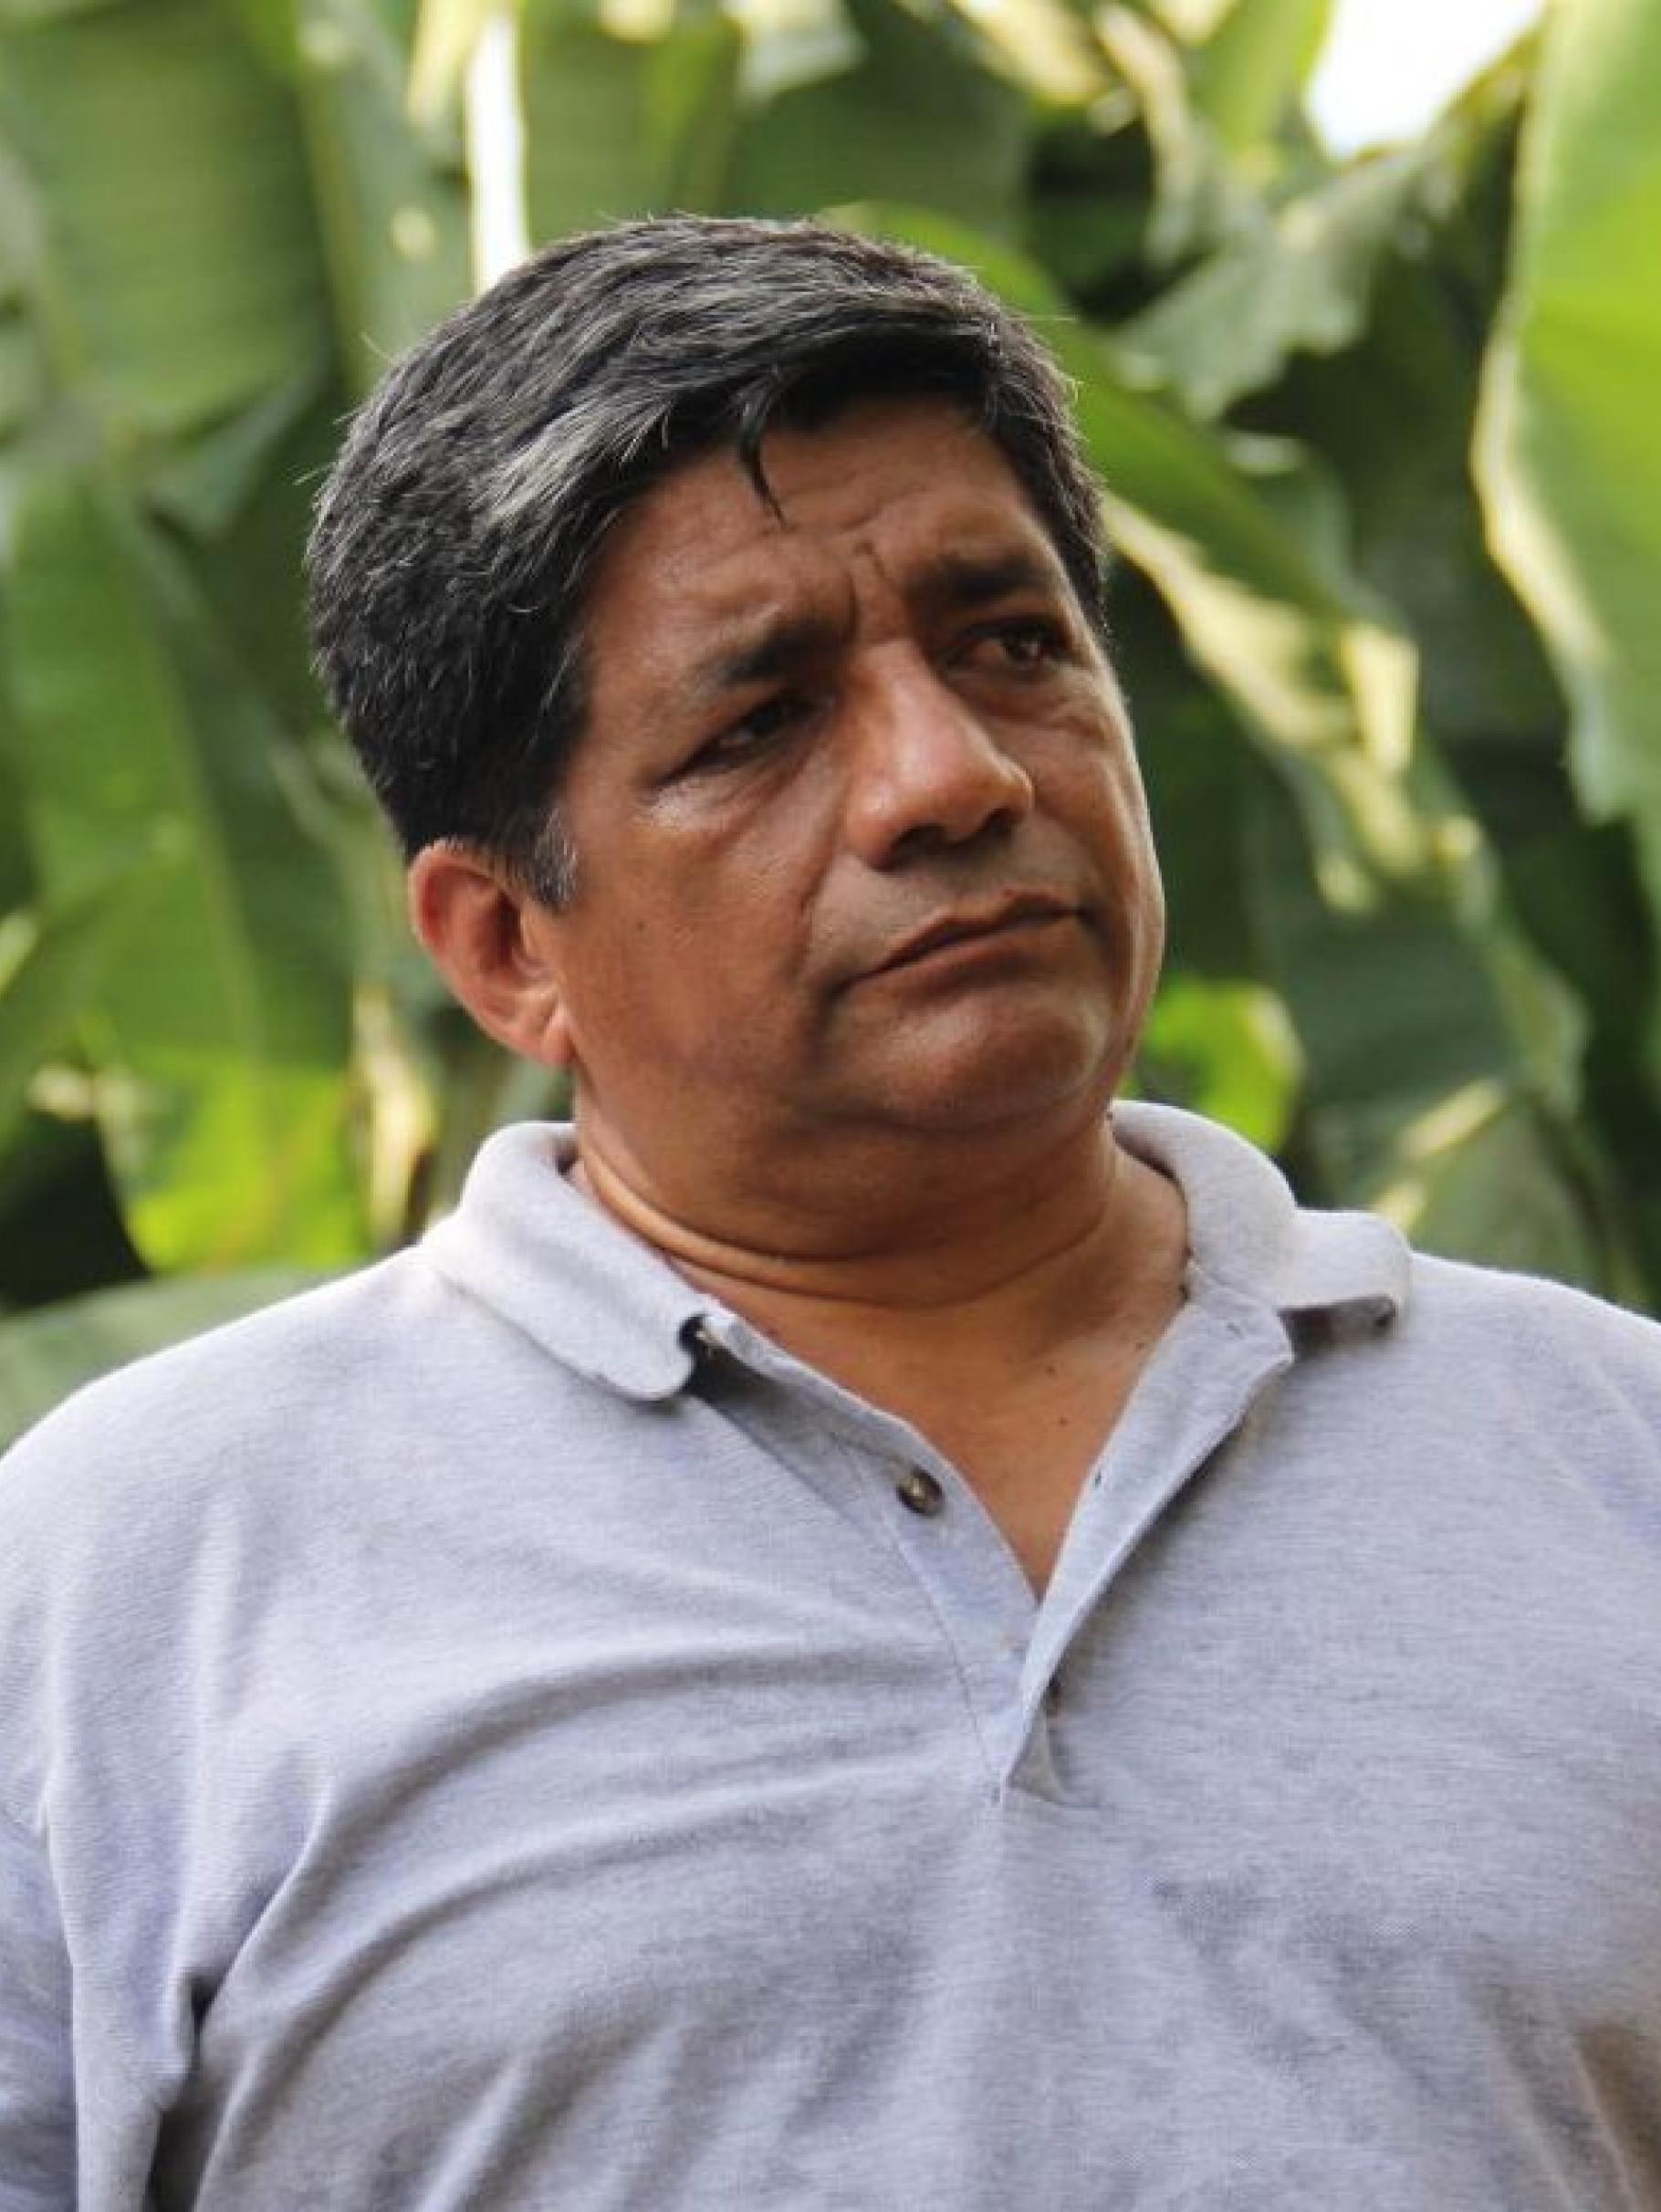 Jorge Acosta steht vor Bananenpflanzen auf einer Plantage